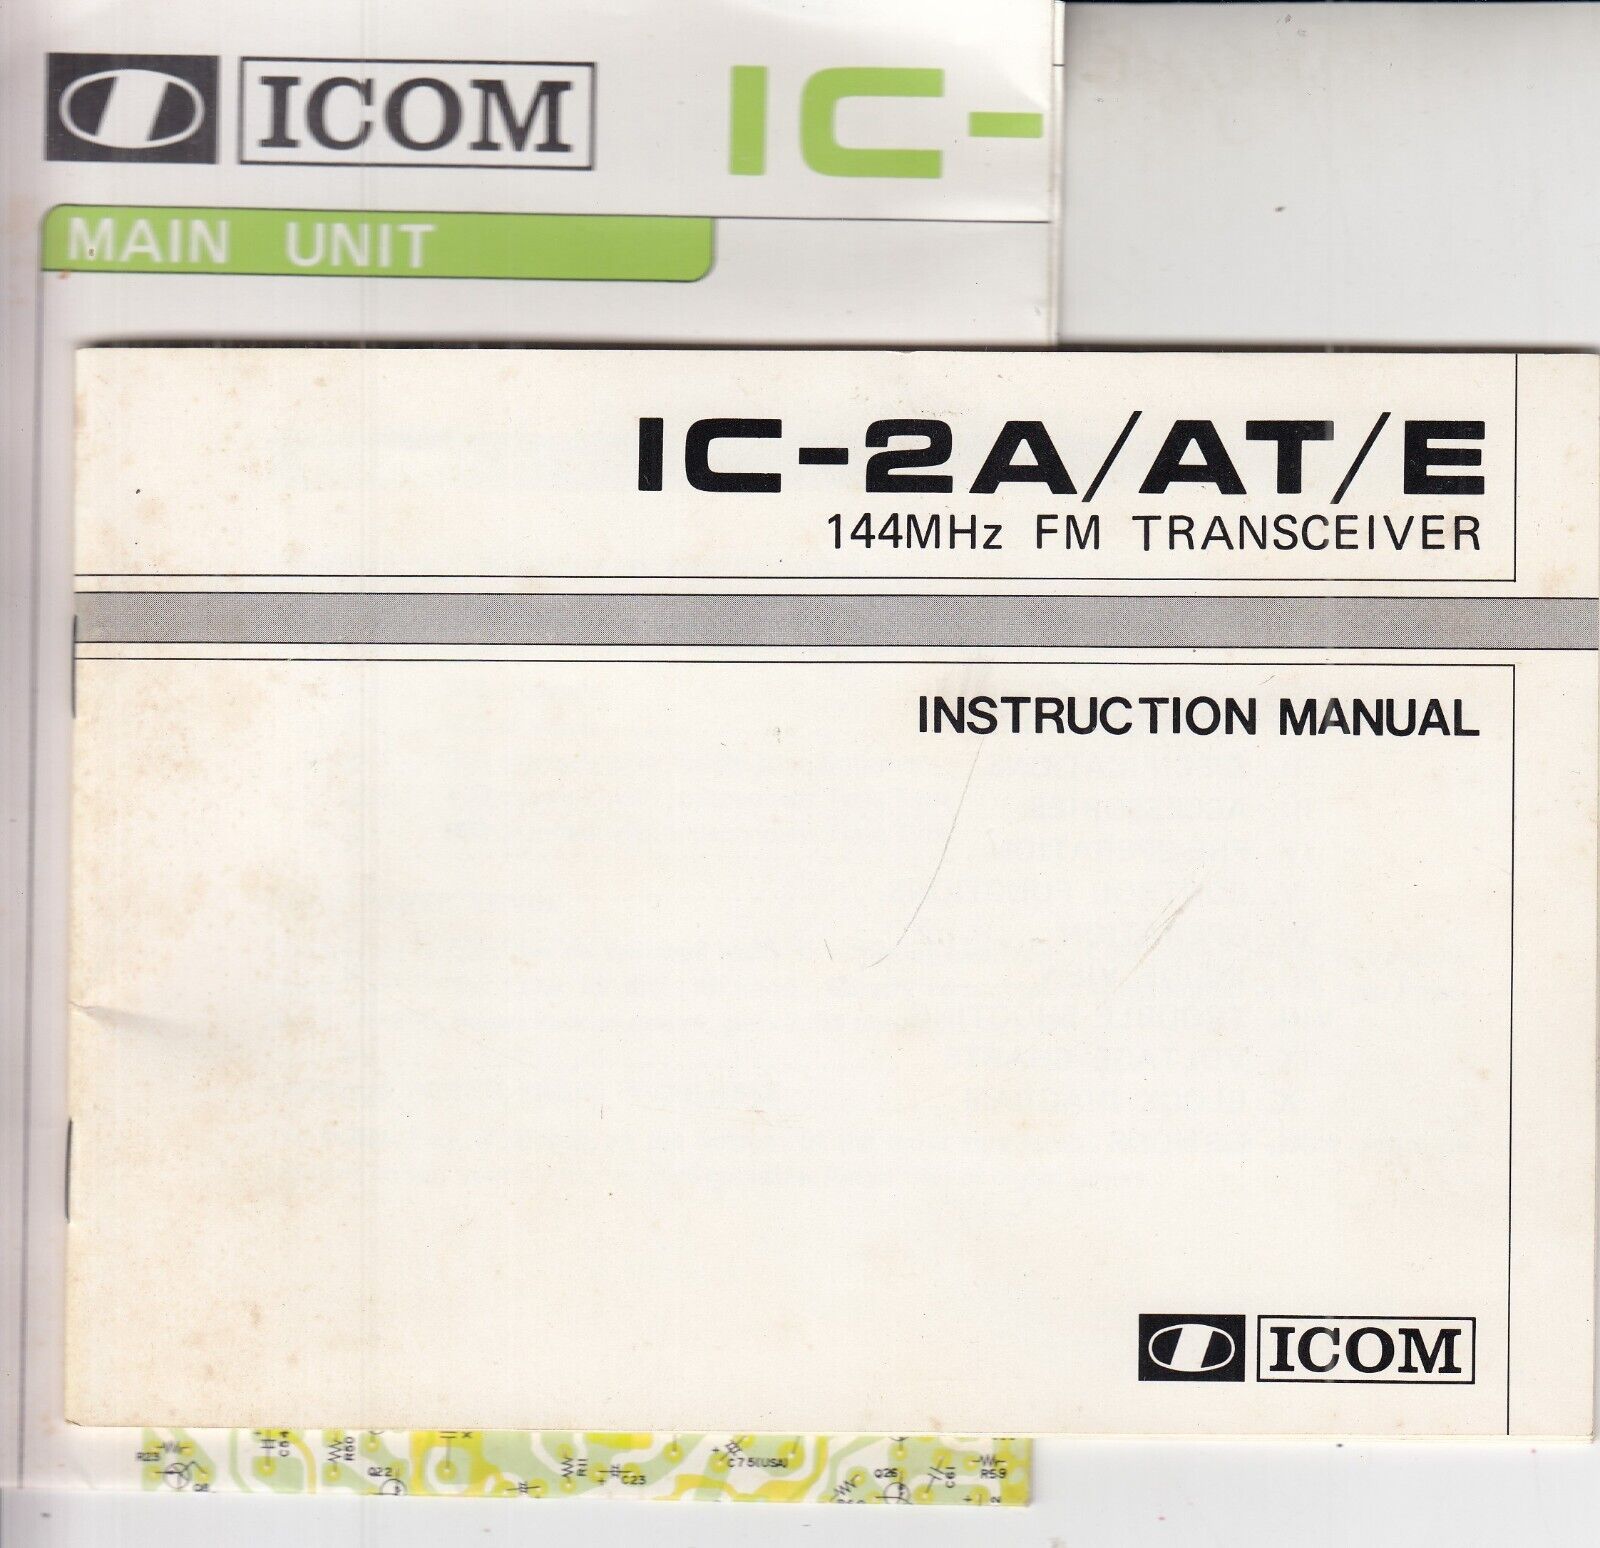 Original ICOM IC-2A/ AT/ E 144MHz FM Transceiver Instruction Manual & Schematic